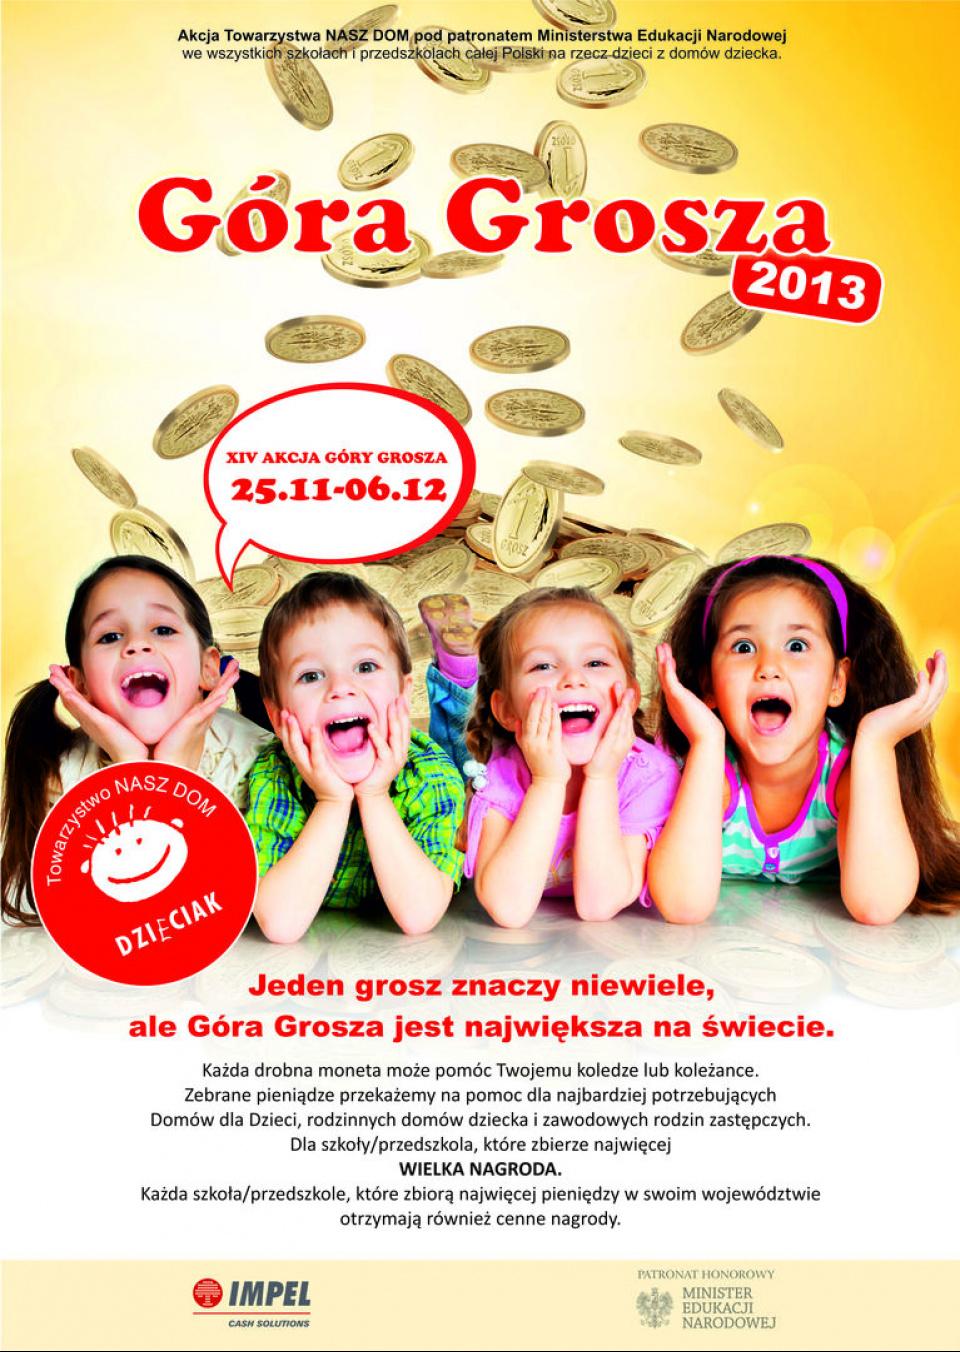 GÓRA GROSZA 2013-Akcja rozpoczęta!